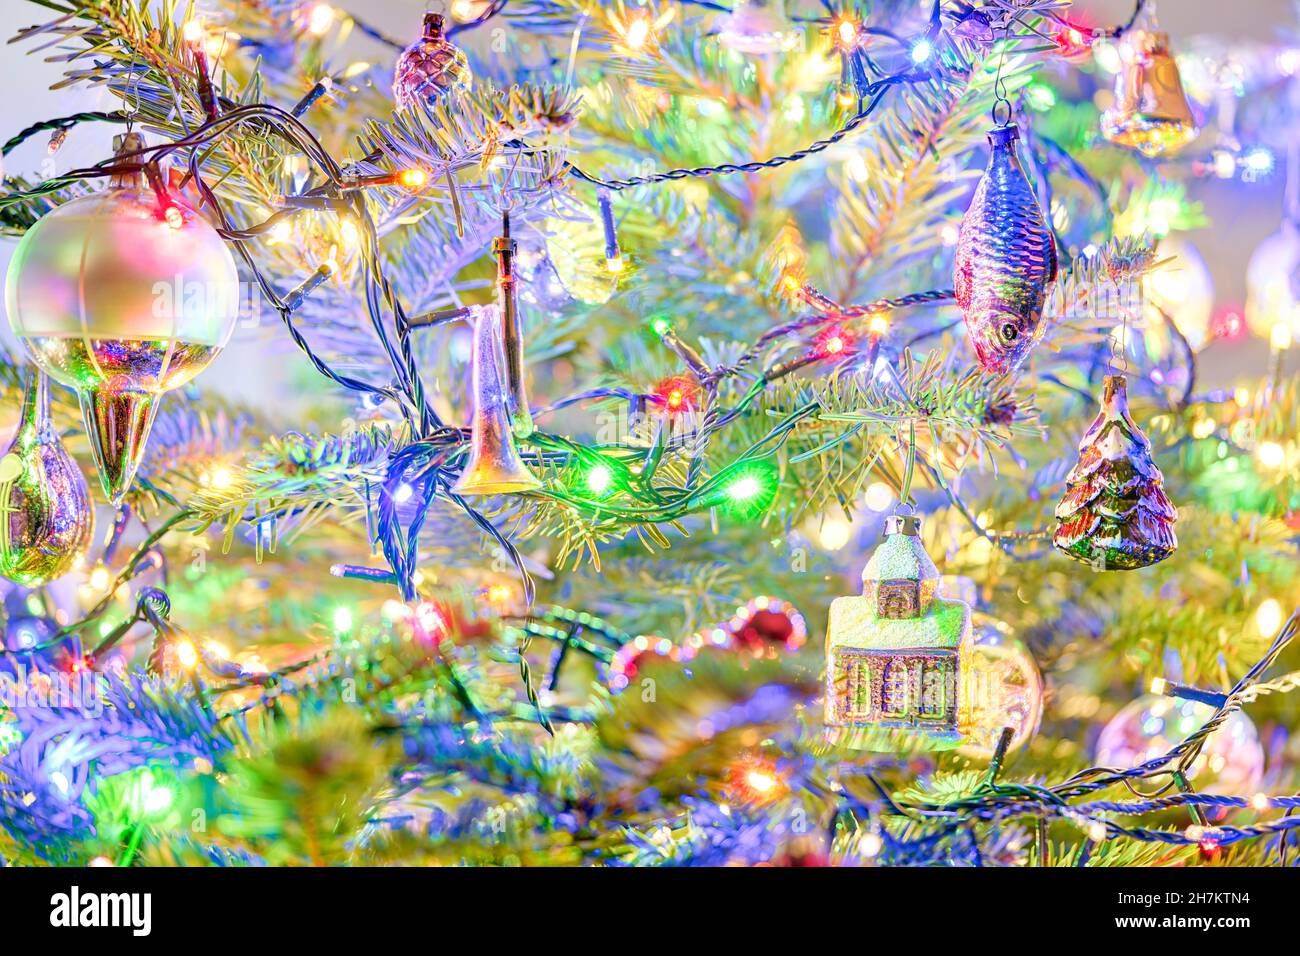 Árbol de Navidad con decoraciones de Navidad antiguo vintage ornamentos Navidad bolas de Navidad bulbos de Navidad burbujas coloridas luces LED Foto de stock